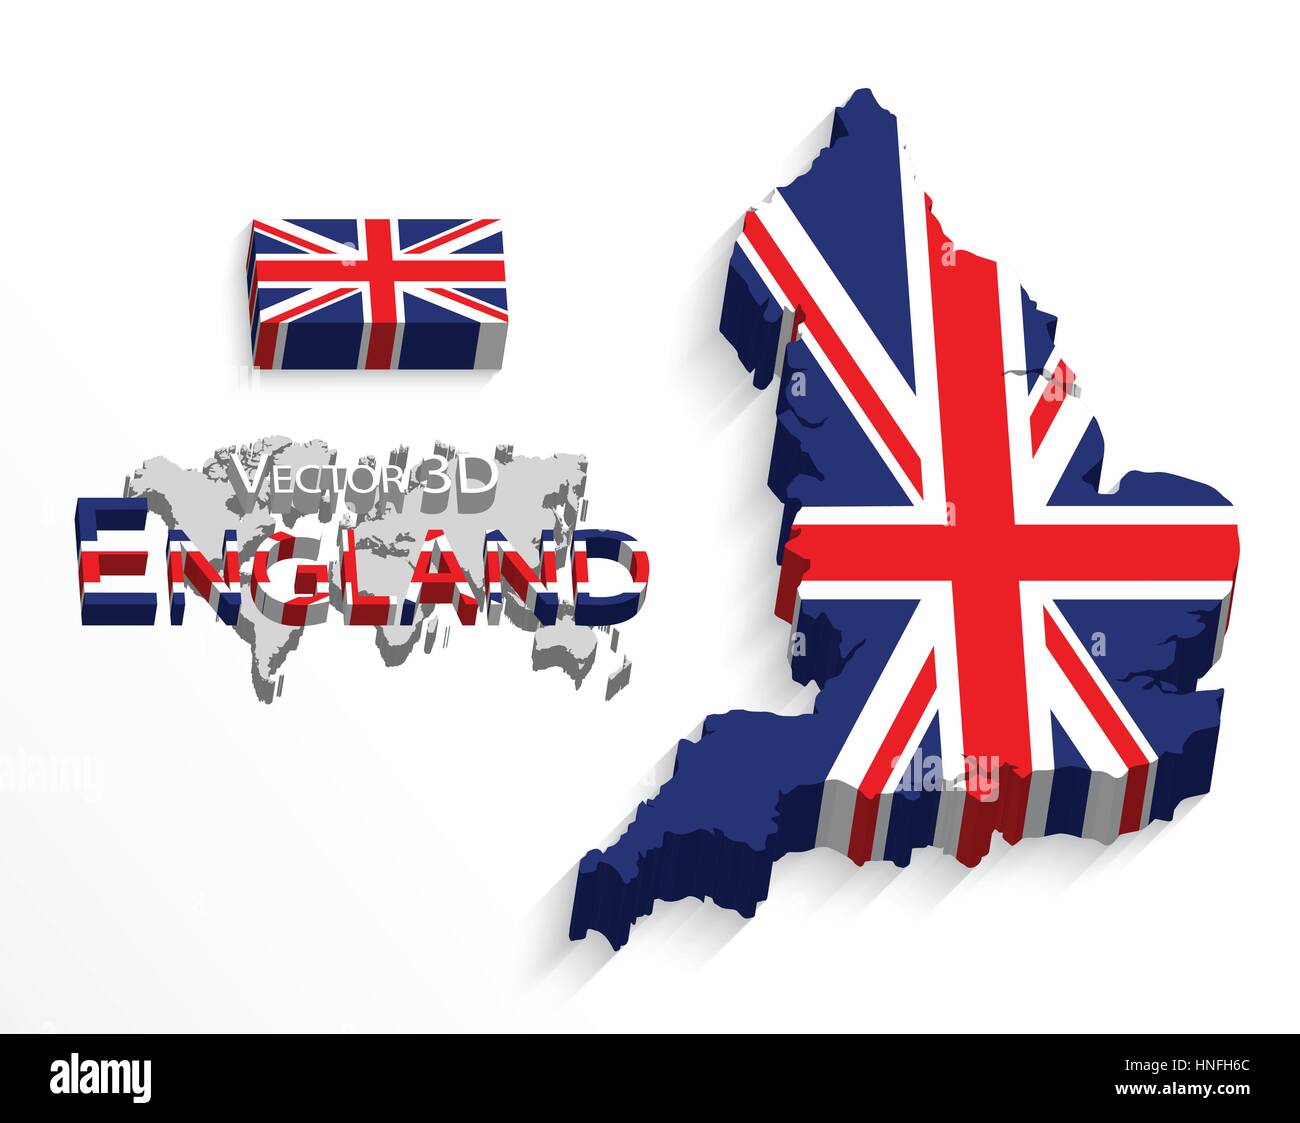 L'Angleterre ( 3D'un drapeau et d'une carte ) ( Royaume-Uni ) ( moissonneuse-batteuse d'un drapeau et d'une carte ) Illustration de Vecteur